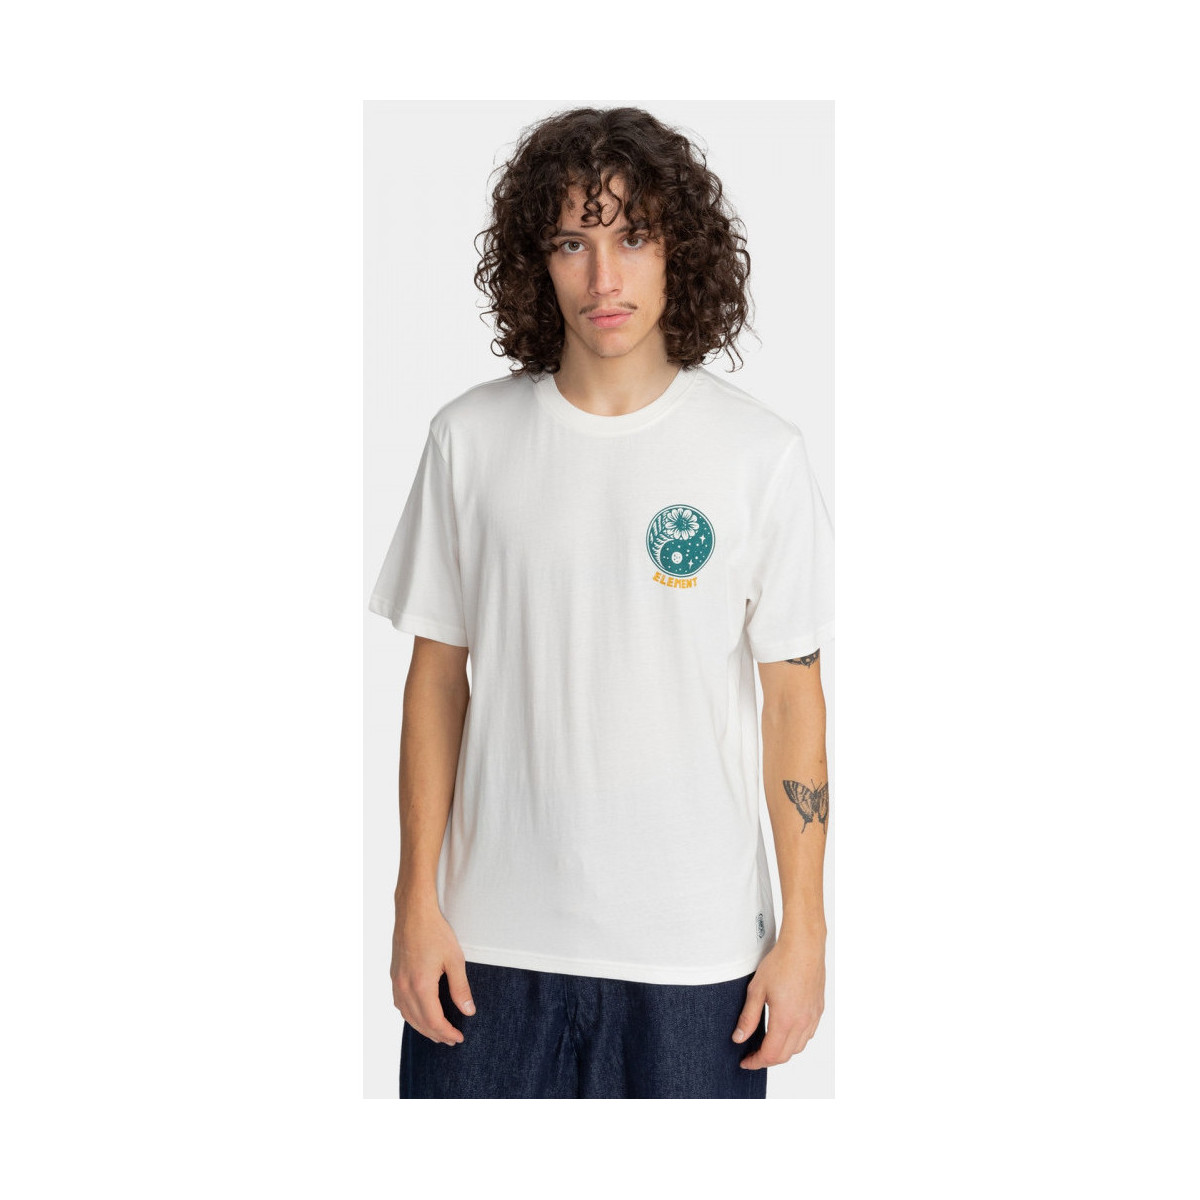 Kleidung Herren T-Shirts & Poloshirts Element Balance Weiss